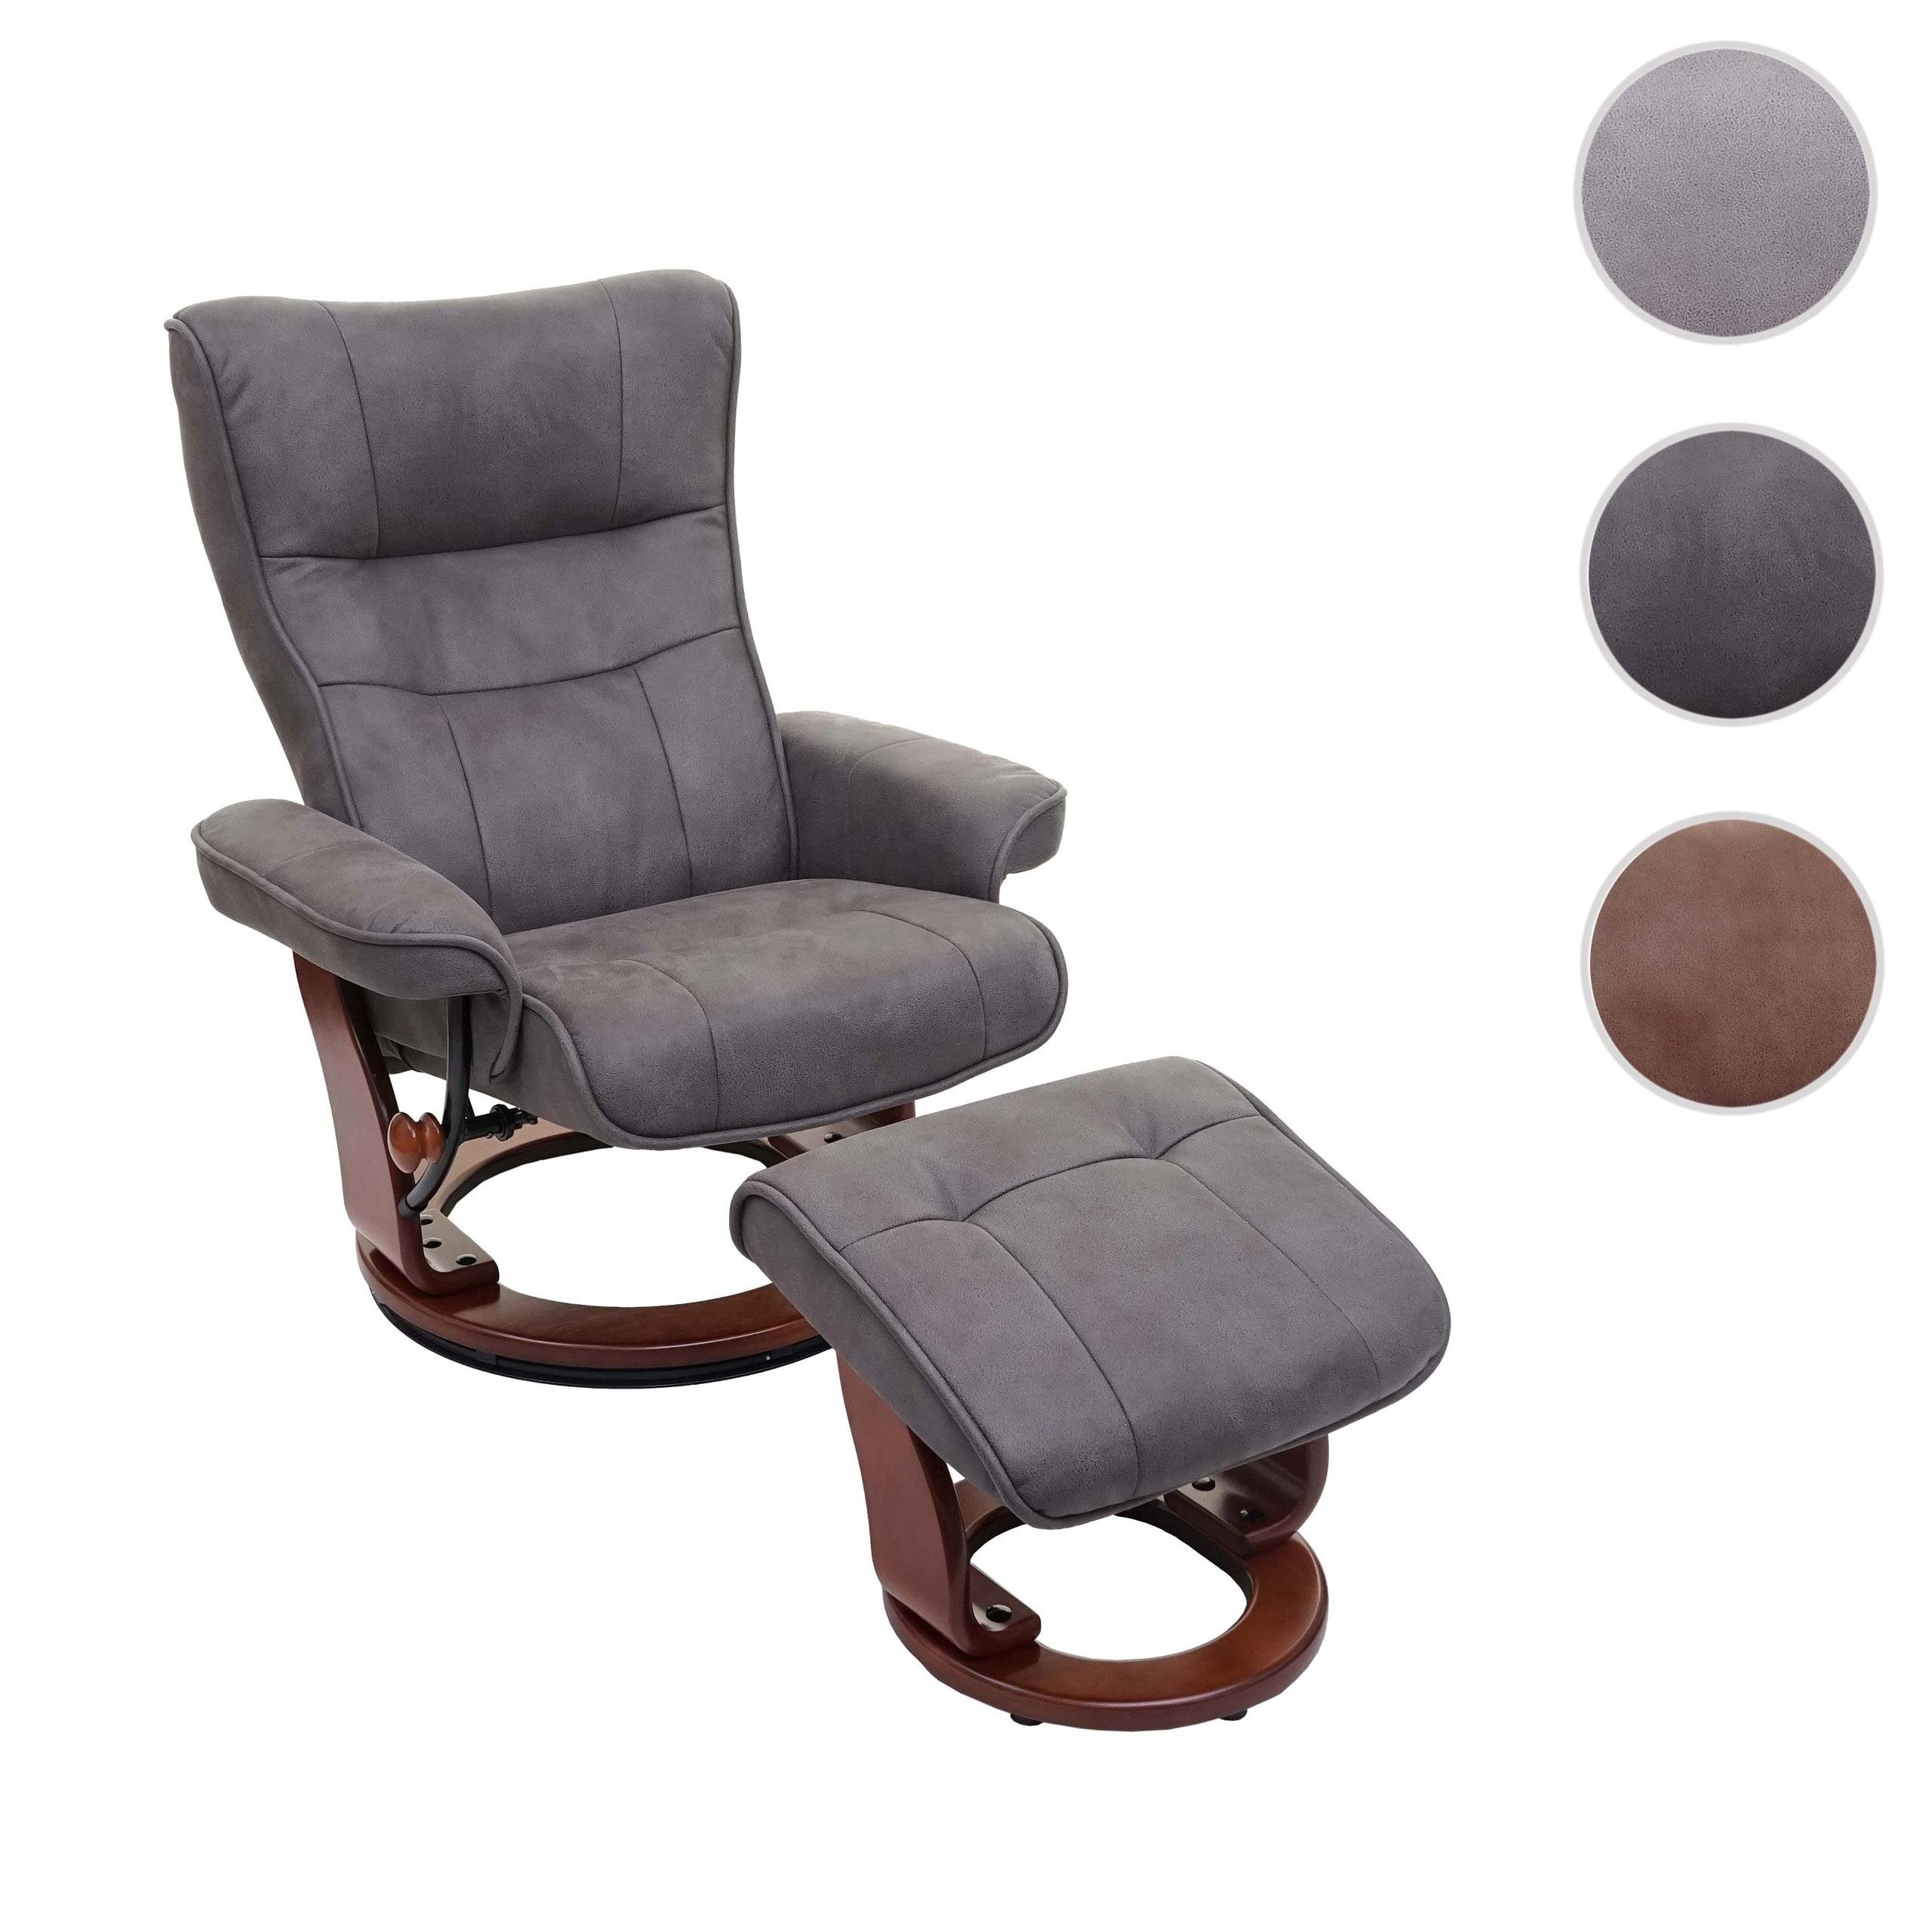 walnussfarben Polsterung furniture Relaxsessel Inkl. MCA dunkelgrau, Breite Edmonton-S, Armlehnen, Fußhocker, gepolstertem Extradicke